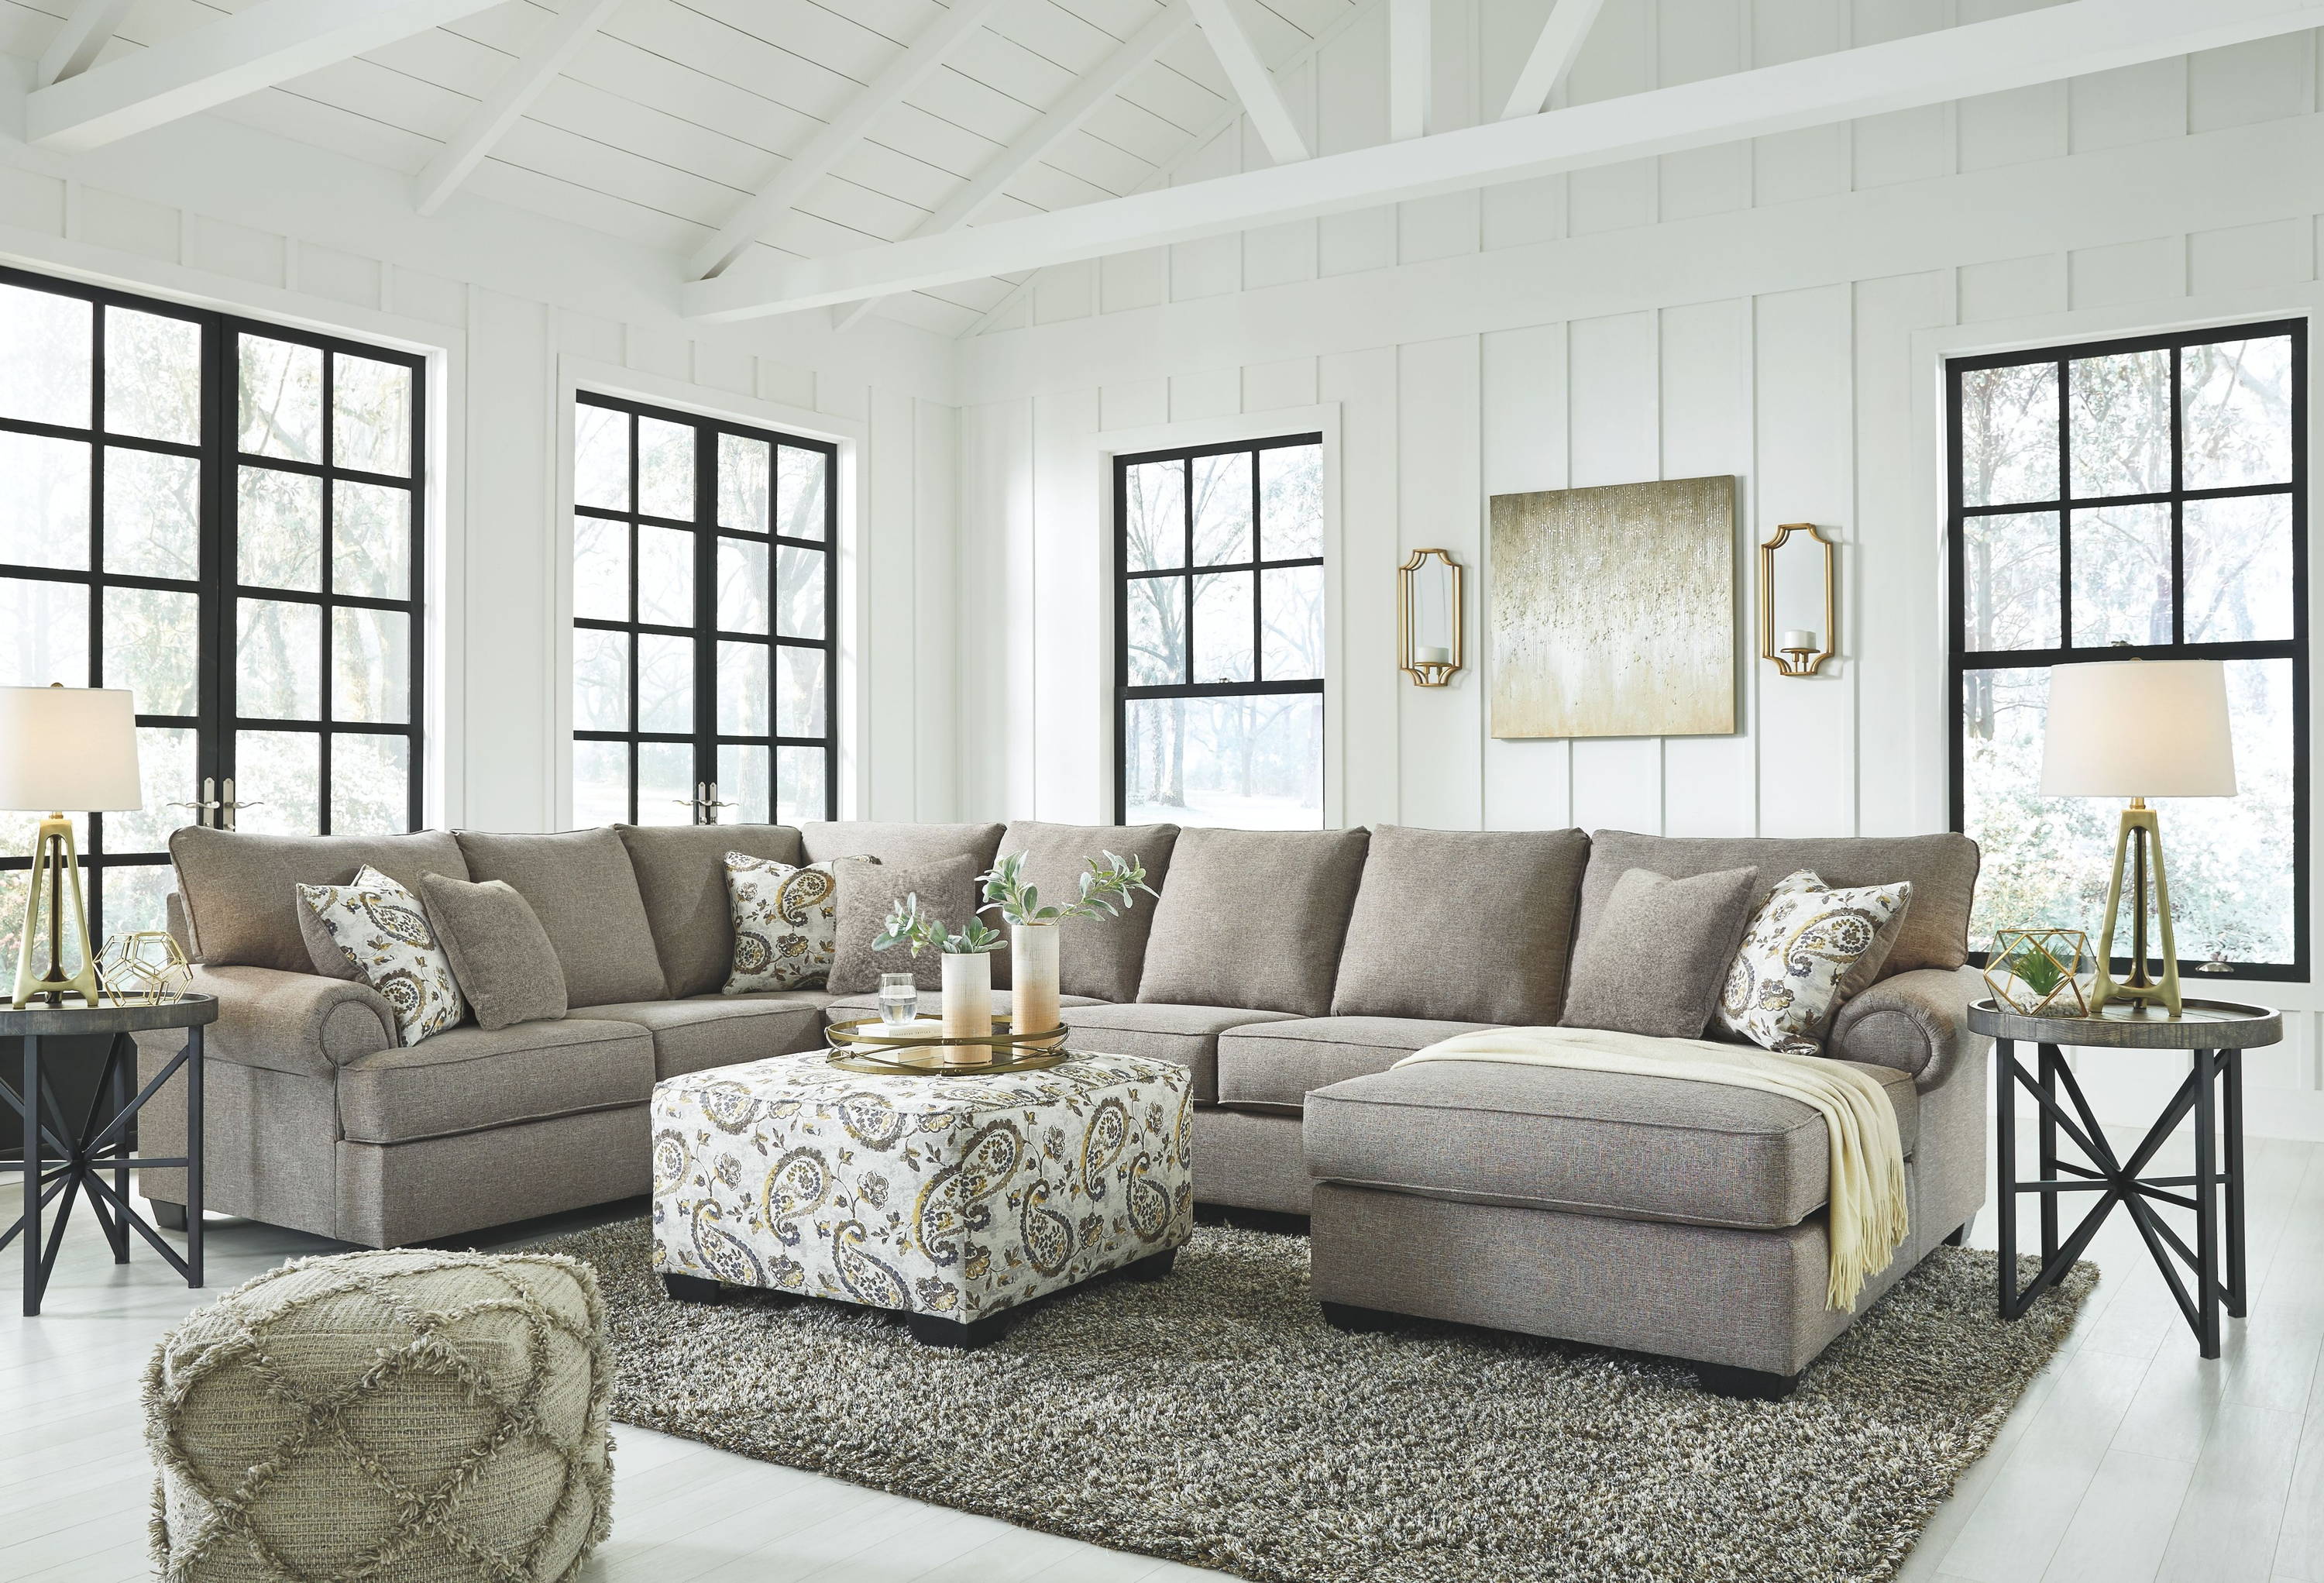 living room furniture usa online